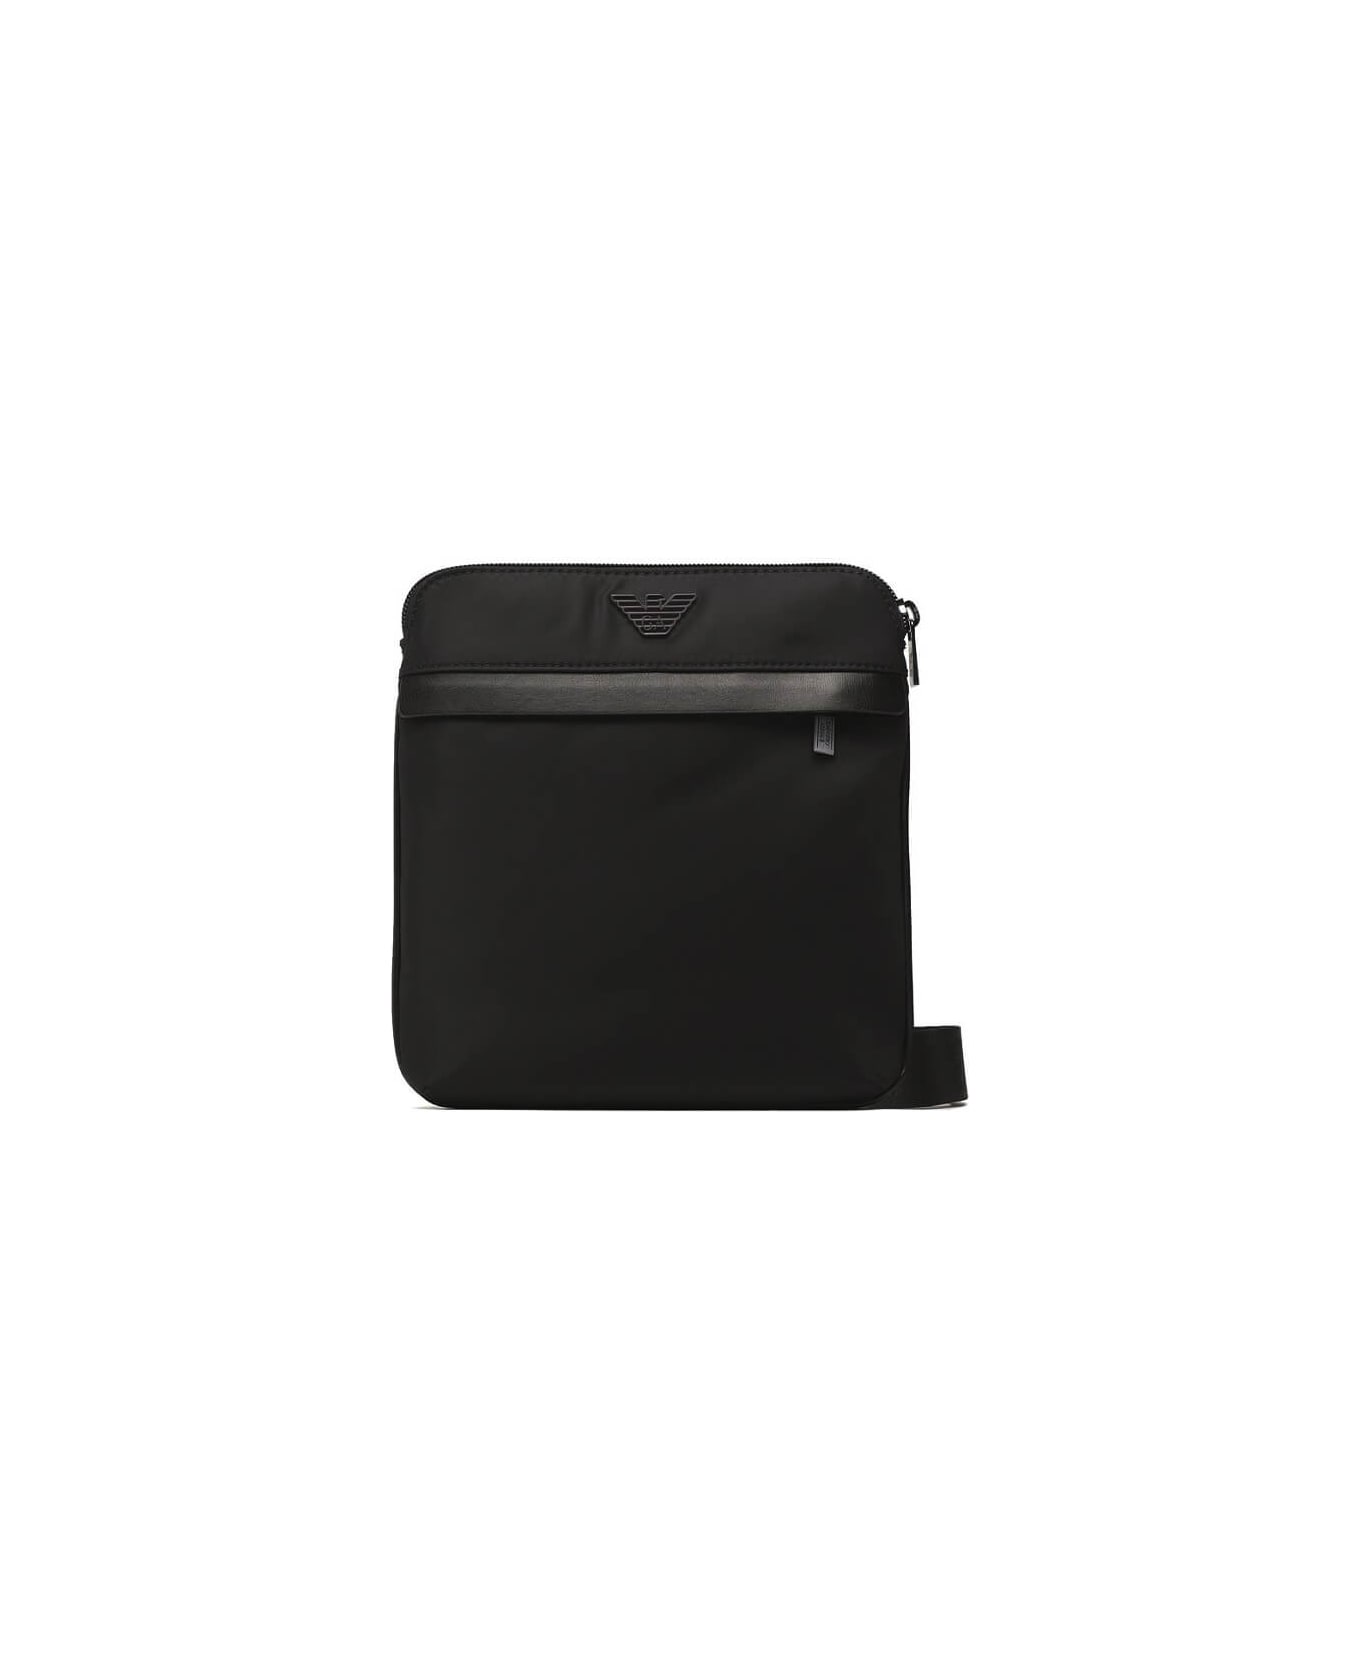 Emporio Armani Black Nylon Crossbody Bag - Nero